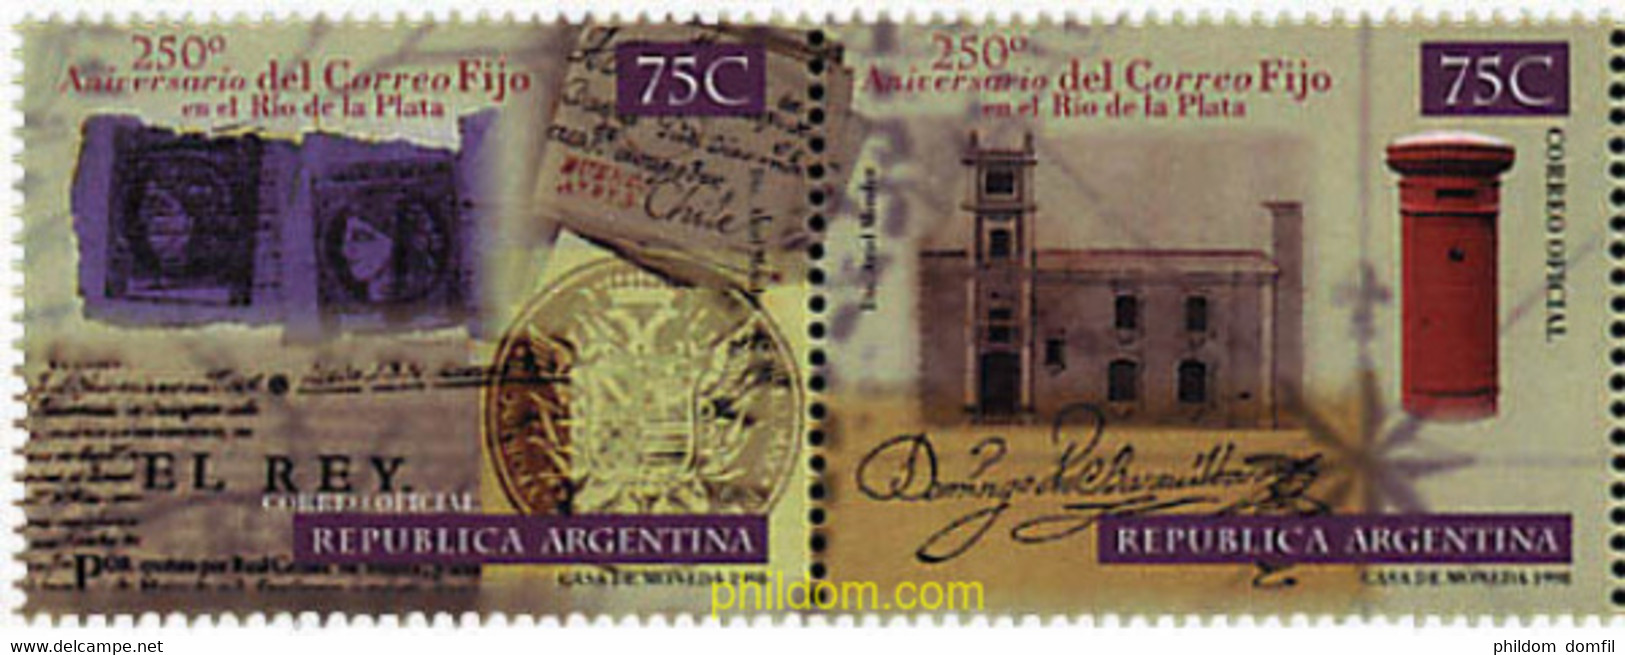 6940 MNH ARGENTINA 1998 250 ANIVERSARIO DEL "CORREO FIJO" EN RIO DE LA PLATA - Used Stamps